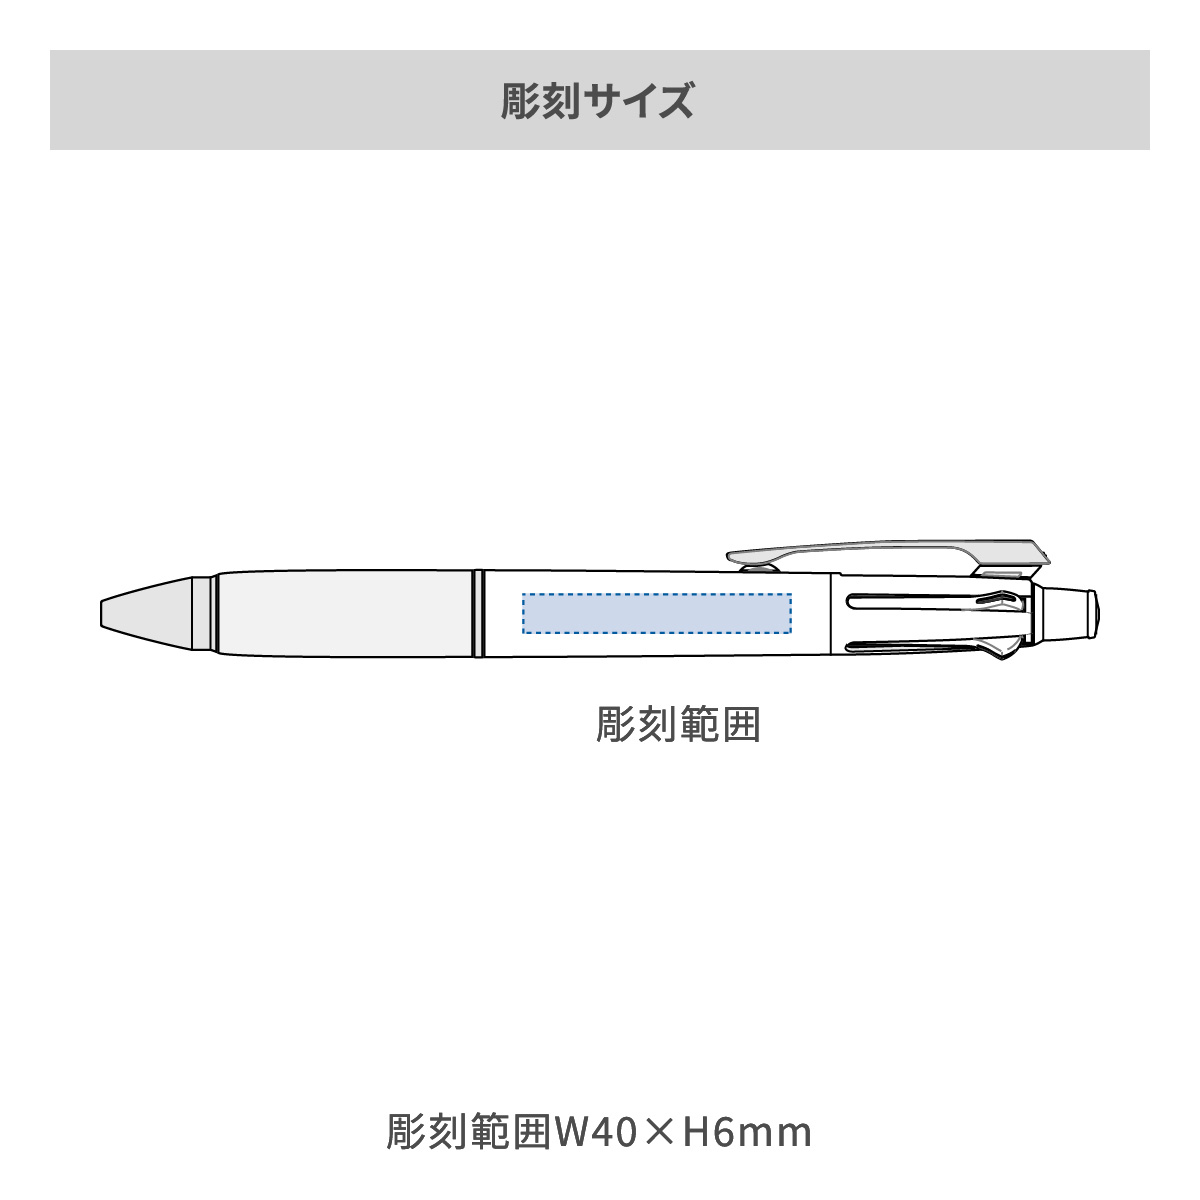 【短納期】三菱鉛筆 ジェットストリーム 多機能ペン 4&1 0.5mmの名入れ範囲